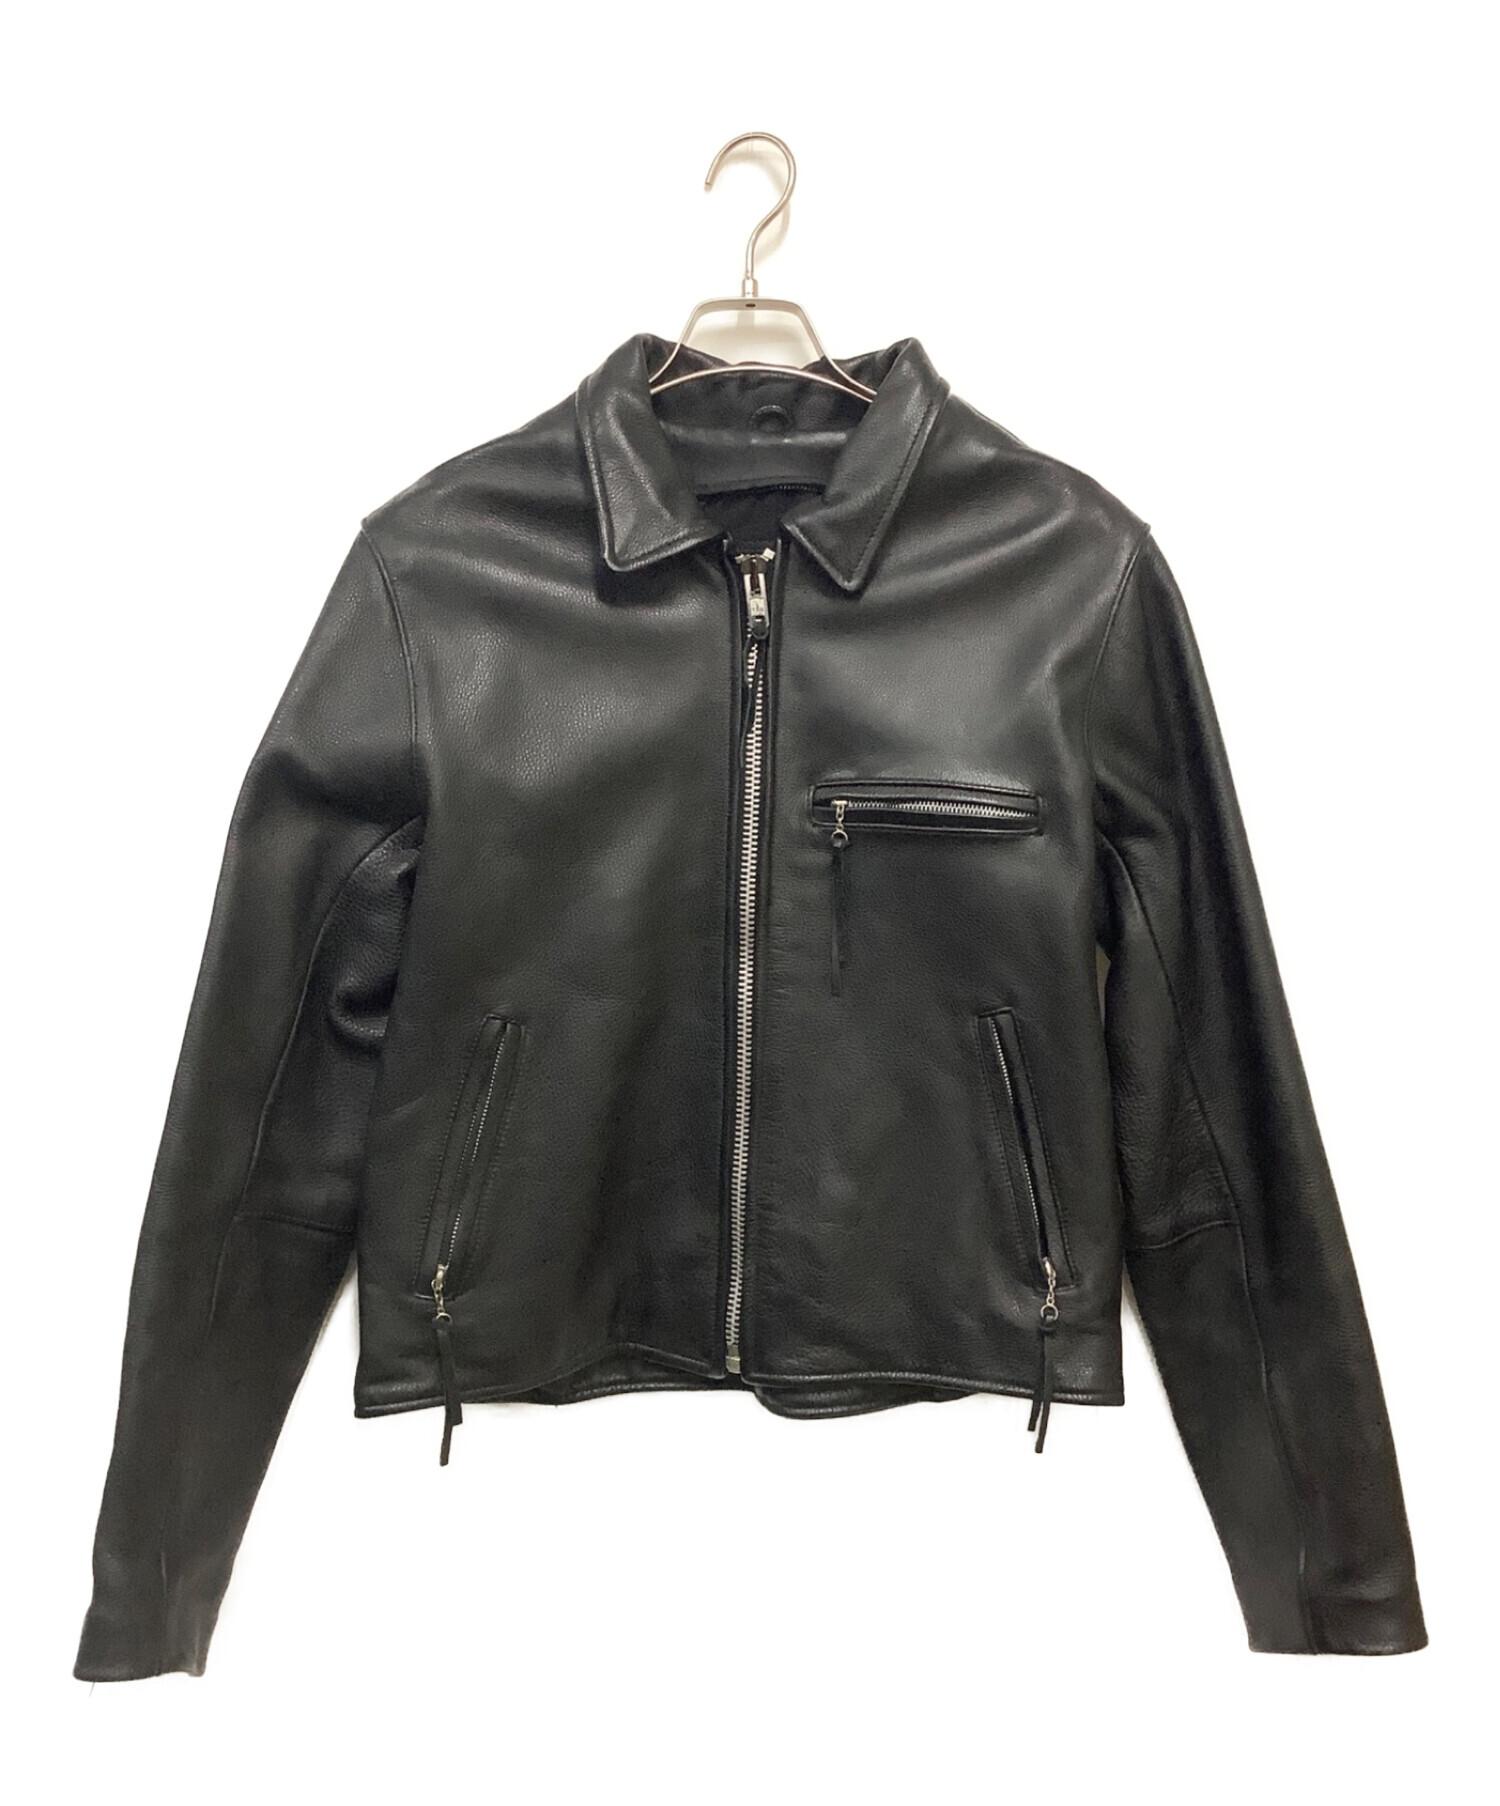 B's Leather (バイカーズレザー) レザージャケット ブラック サイズ:Ⅴ